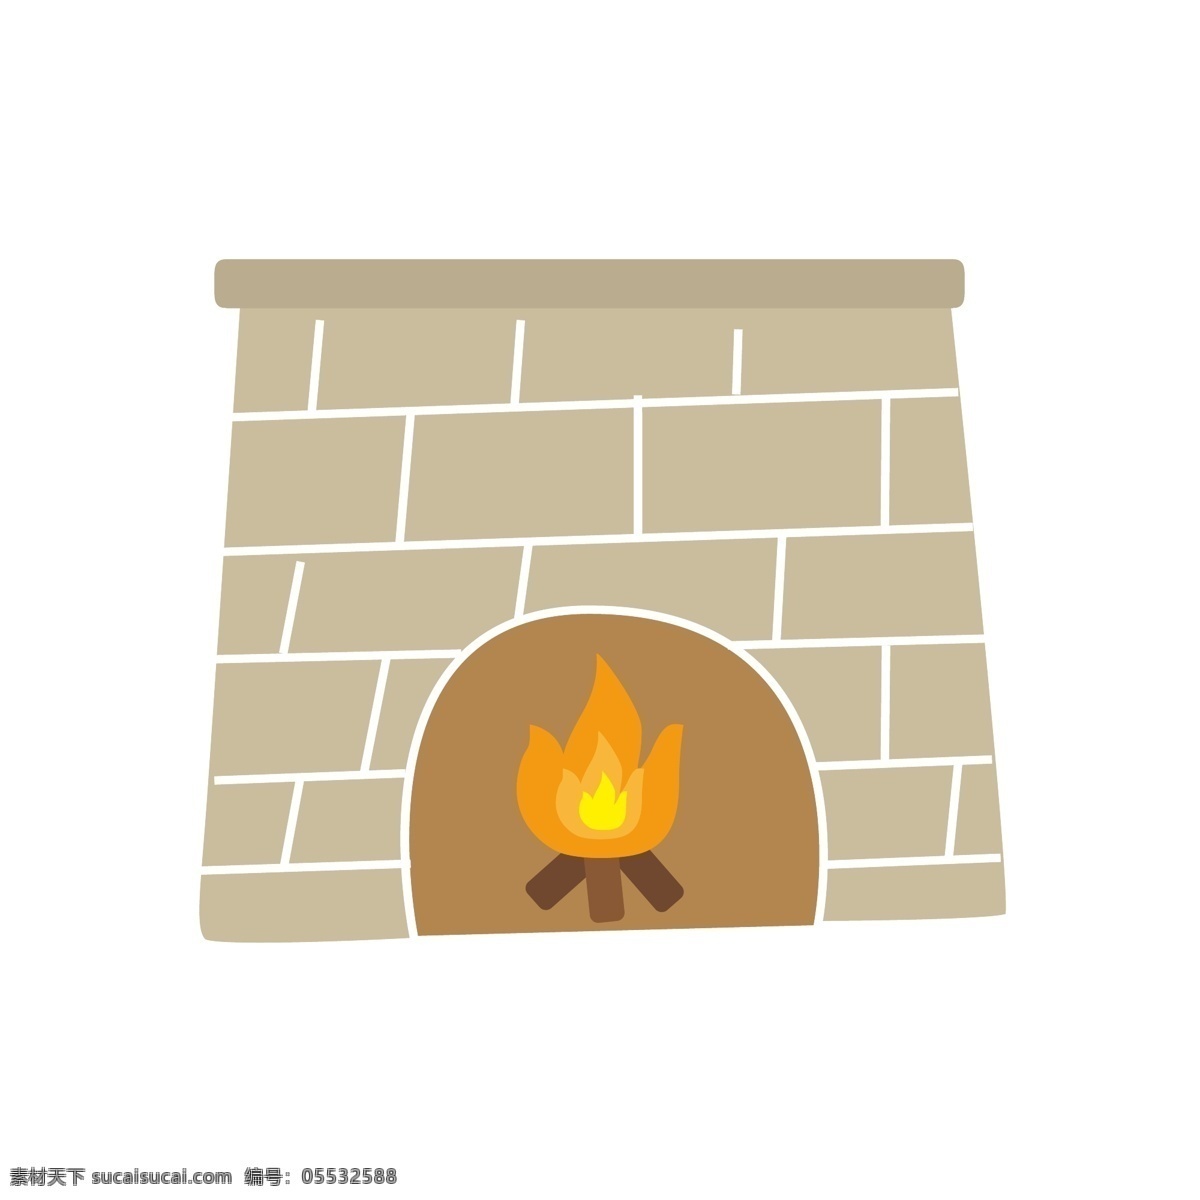 手绘 卡通 壁炉 矢量图 手绘卡通壁炉 卡通矢量 火焰 火 温暖 取暖 卡通壁炉 冬天 取暖的壁炉